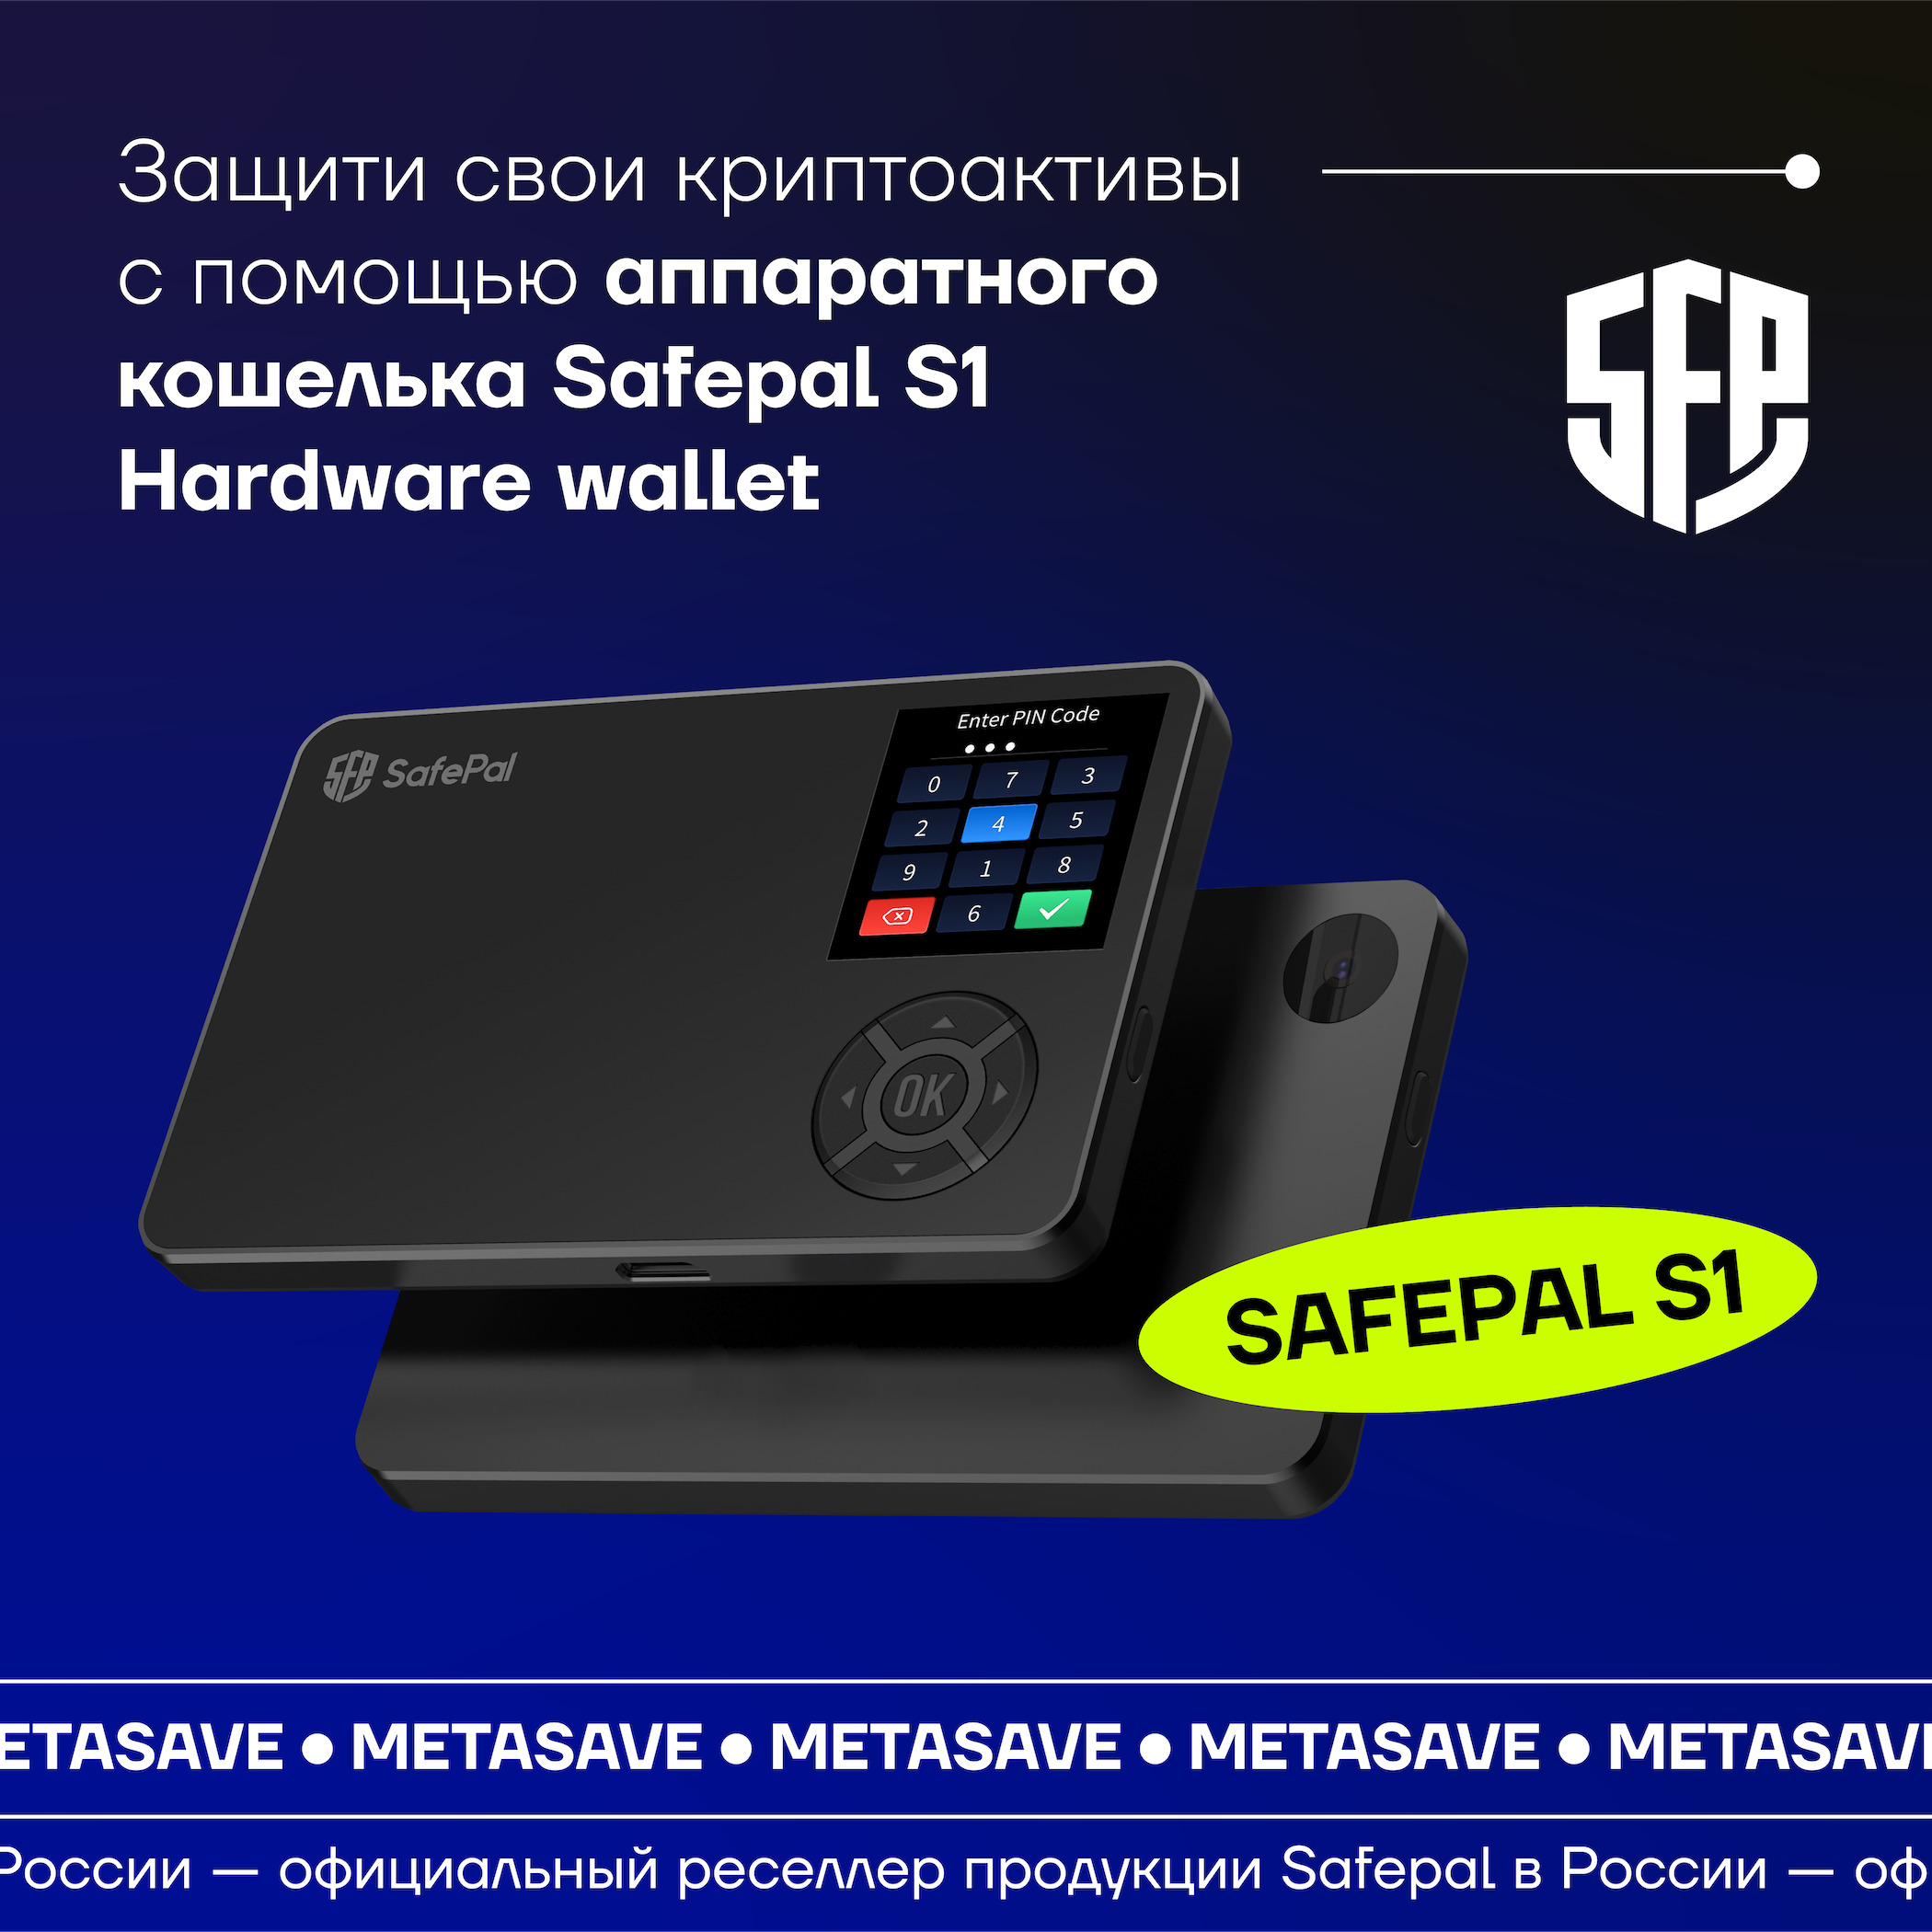 Safepal отзывы. SAFEPAL s1 Hardware Wallet. Мобильный криптокошелек SAFEPAL. SAFEPAL s1 отзывы. Аппаратный кошелек для криптовалют SAFEPAL s1 от оф. Реселлера Bip#39.